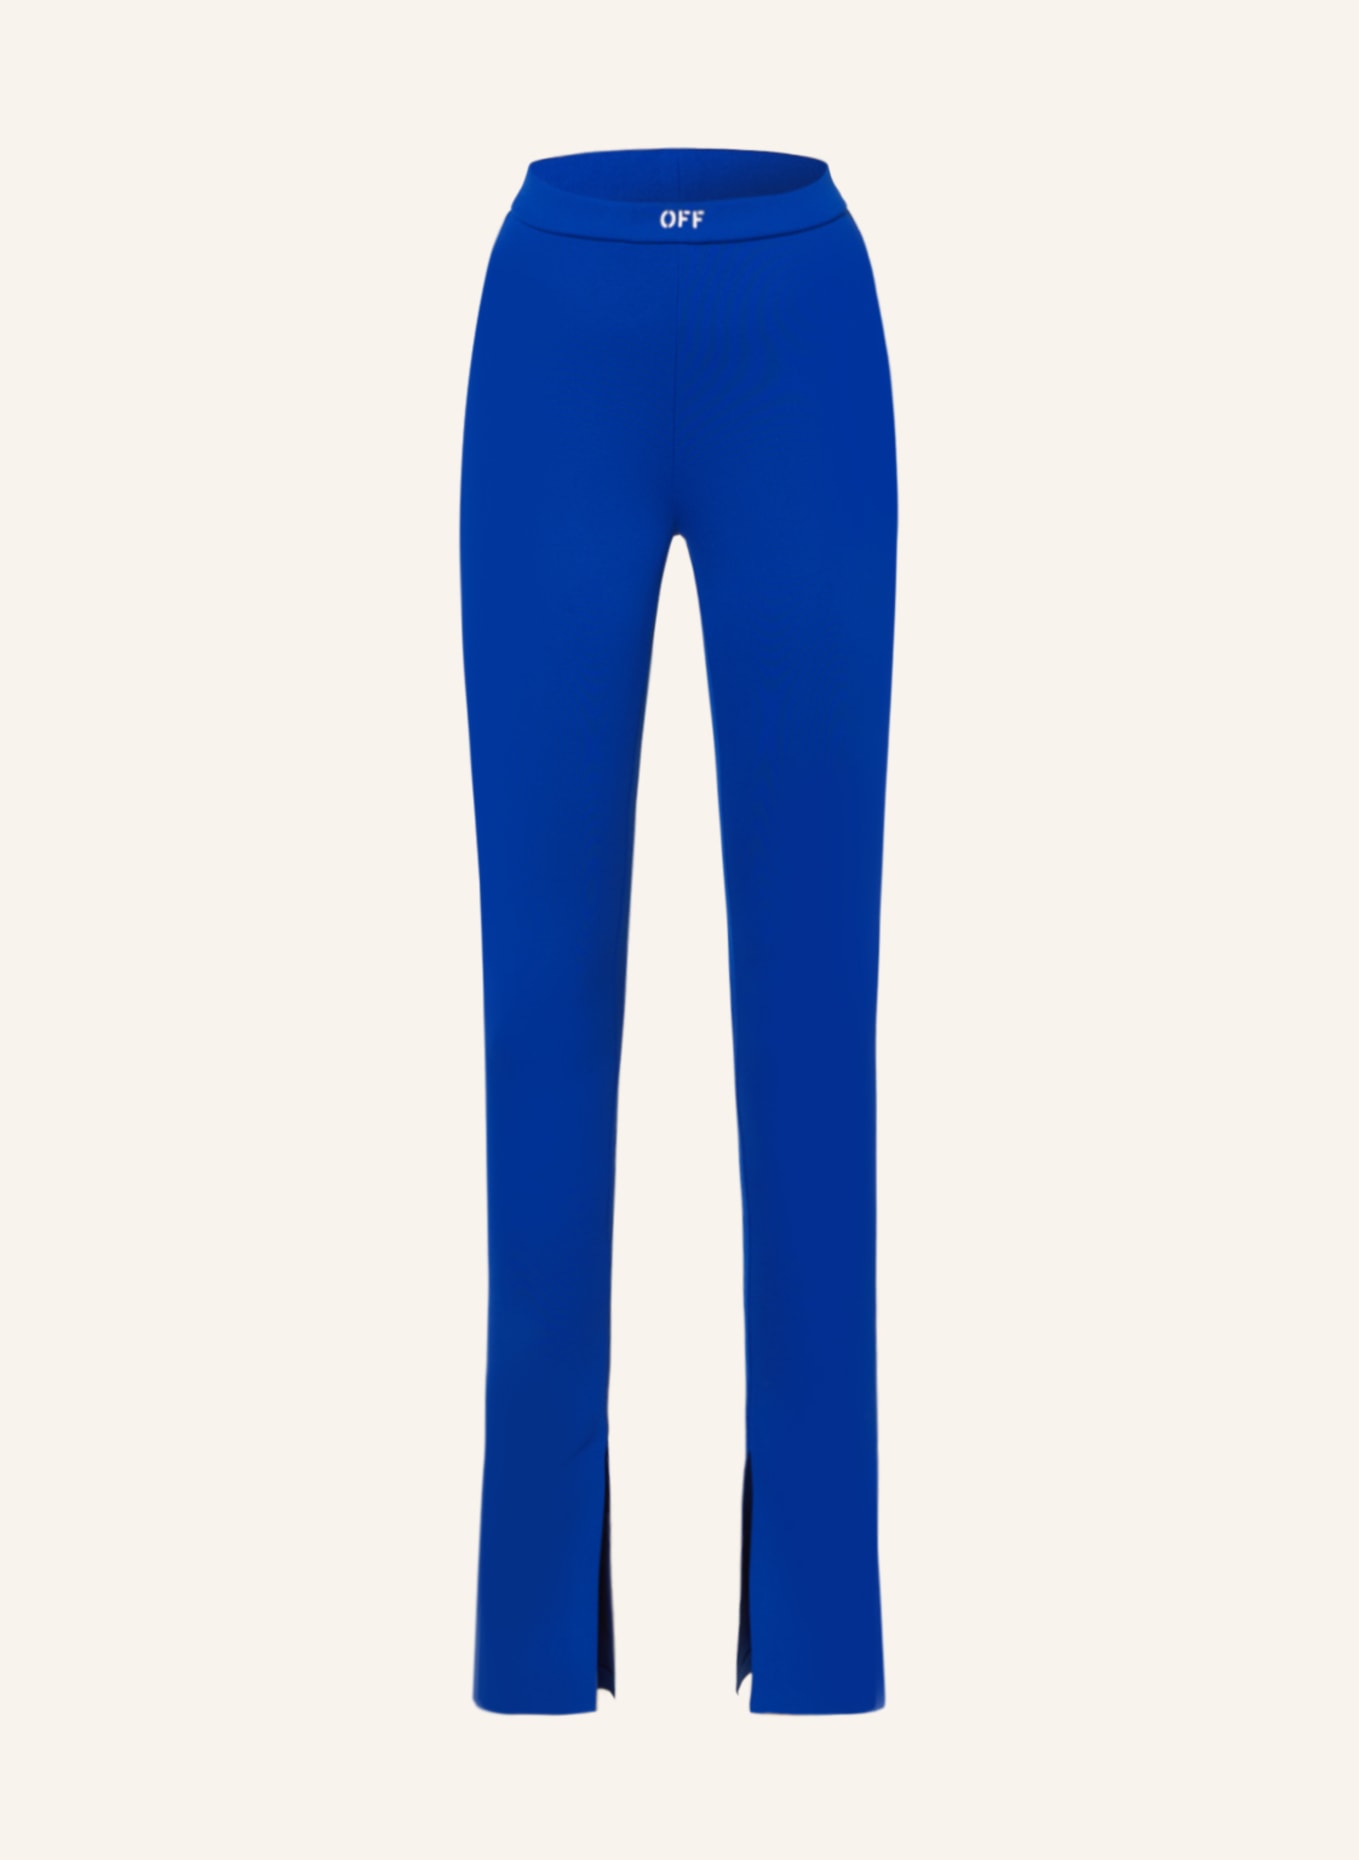 Off-White Leggings, Farbe: 4501  DARK BLUE (Bild 1)